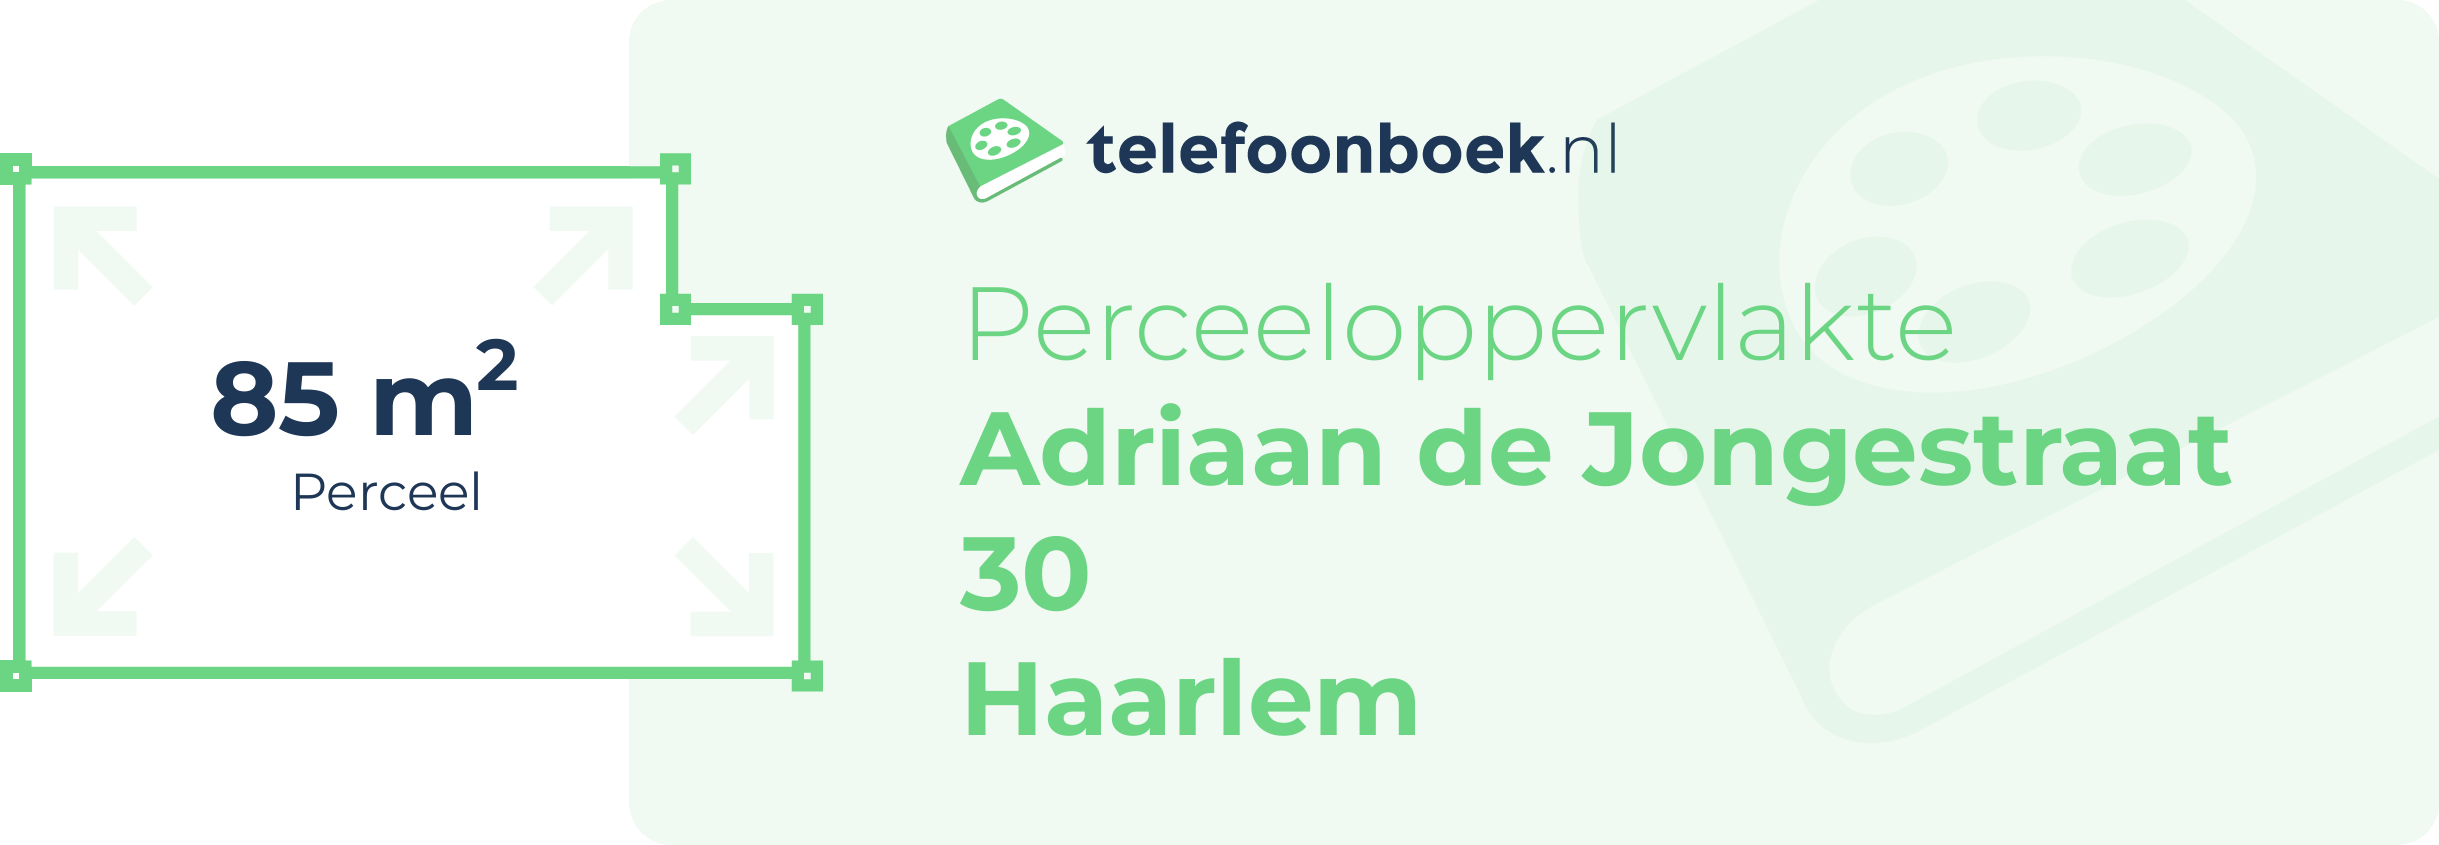 Perceeloppervlakte Adriaan De Jongestraat 30 Haarlem